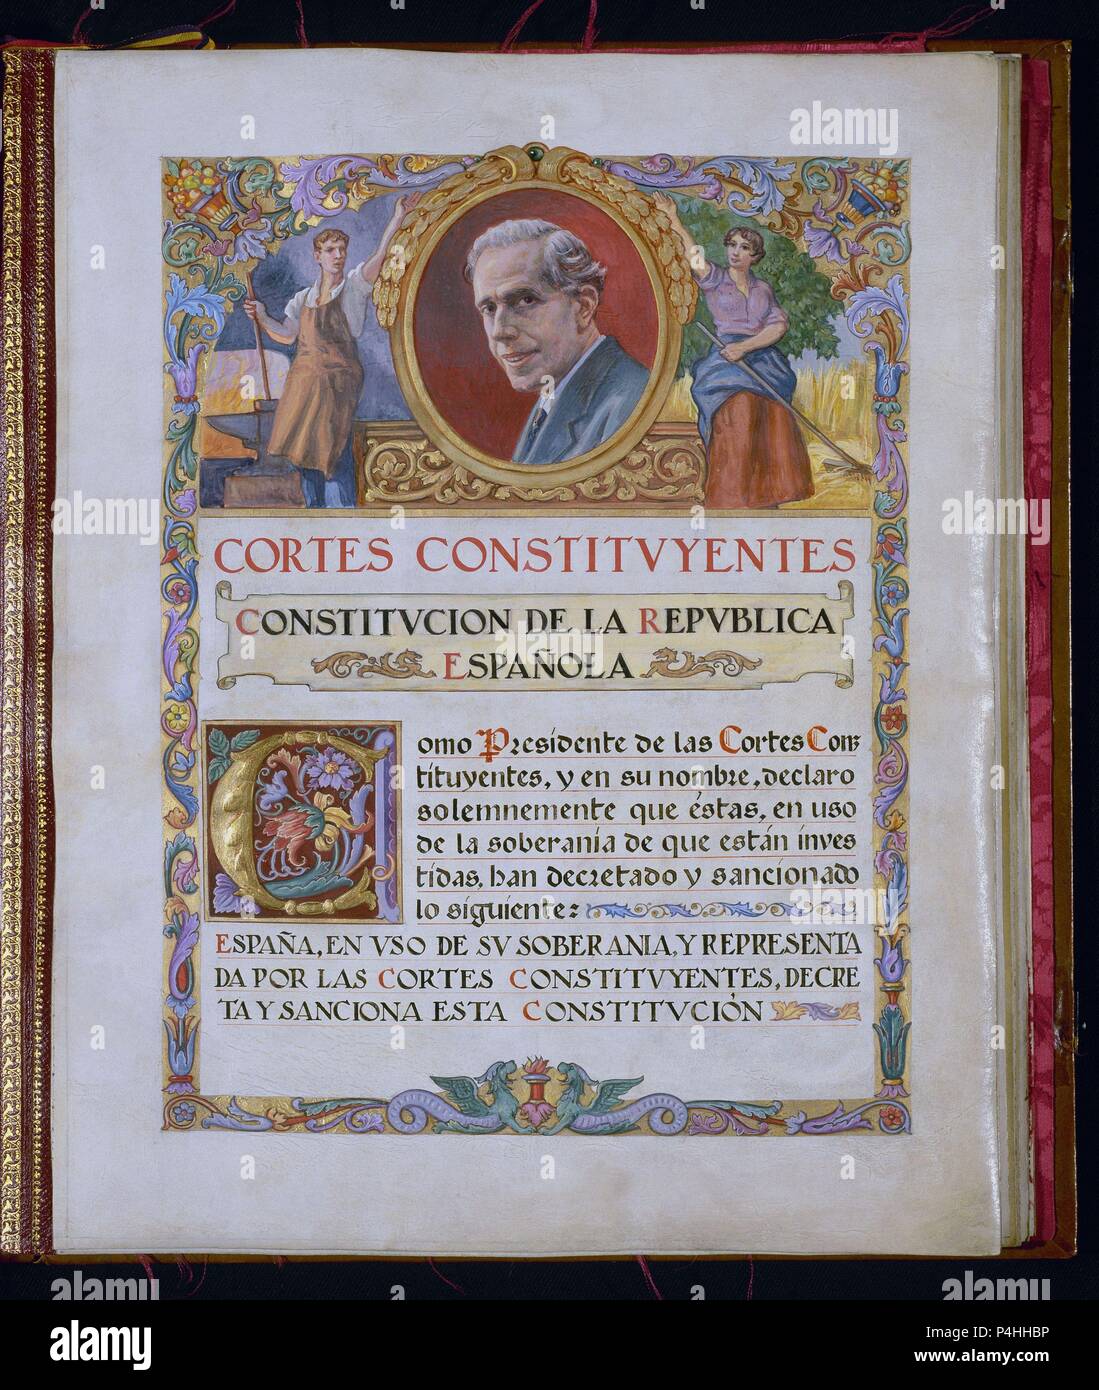 PRIMERA PAGINA DE LA CONSTITUCION DE 1931 CON EL RETRATO DE JULIAN BESTEIRO PRESIDENTE DE LAS CORTES CONSTITUYENTES. Location: CONGRESO DE LOS DIPUTADOS-BIBLIOTECA, MADRID, SPAIN. Stock Photo